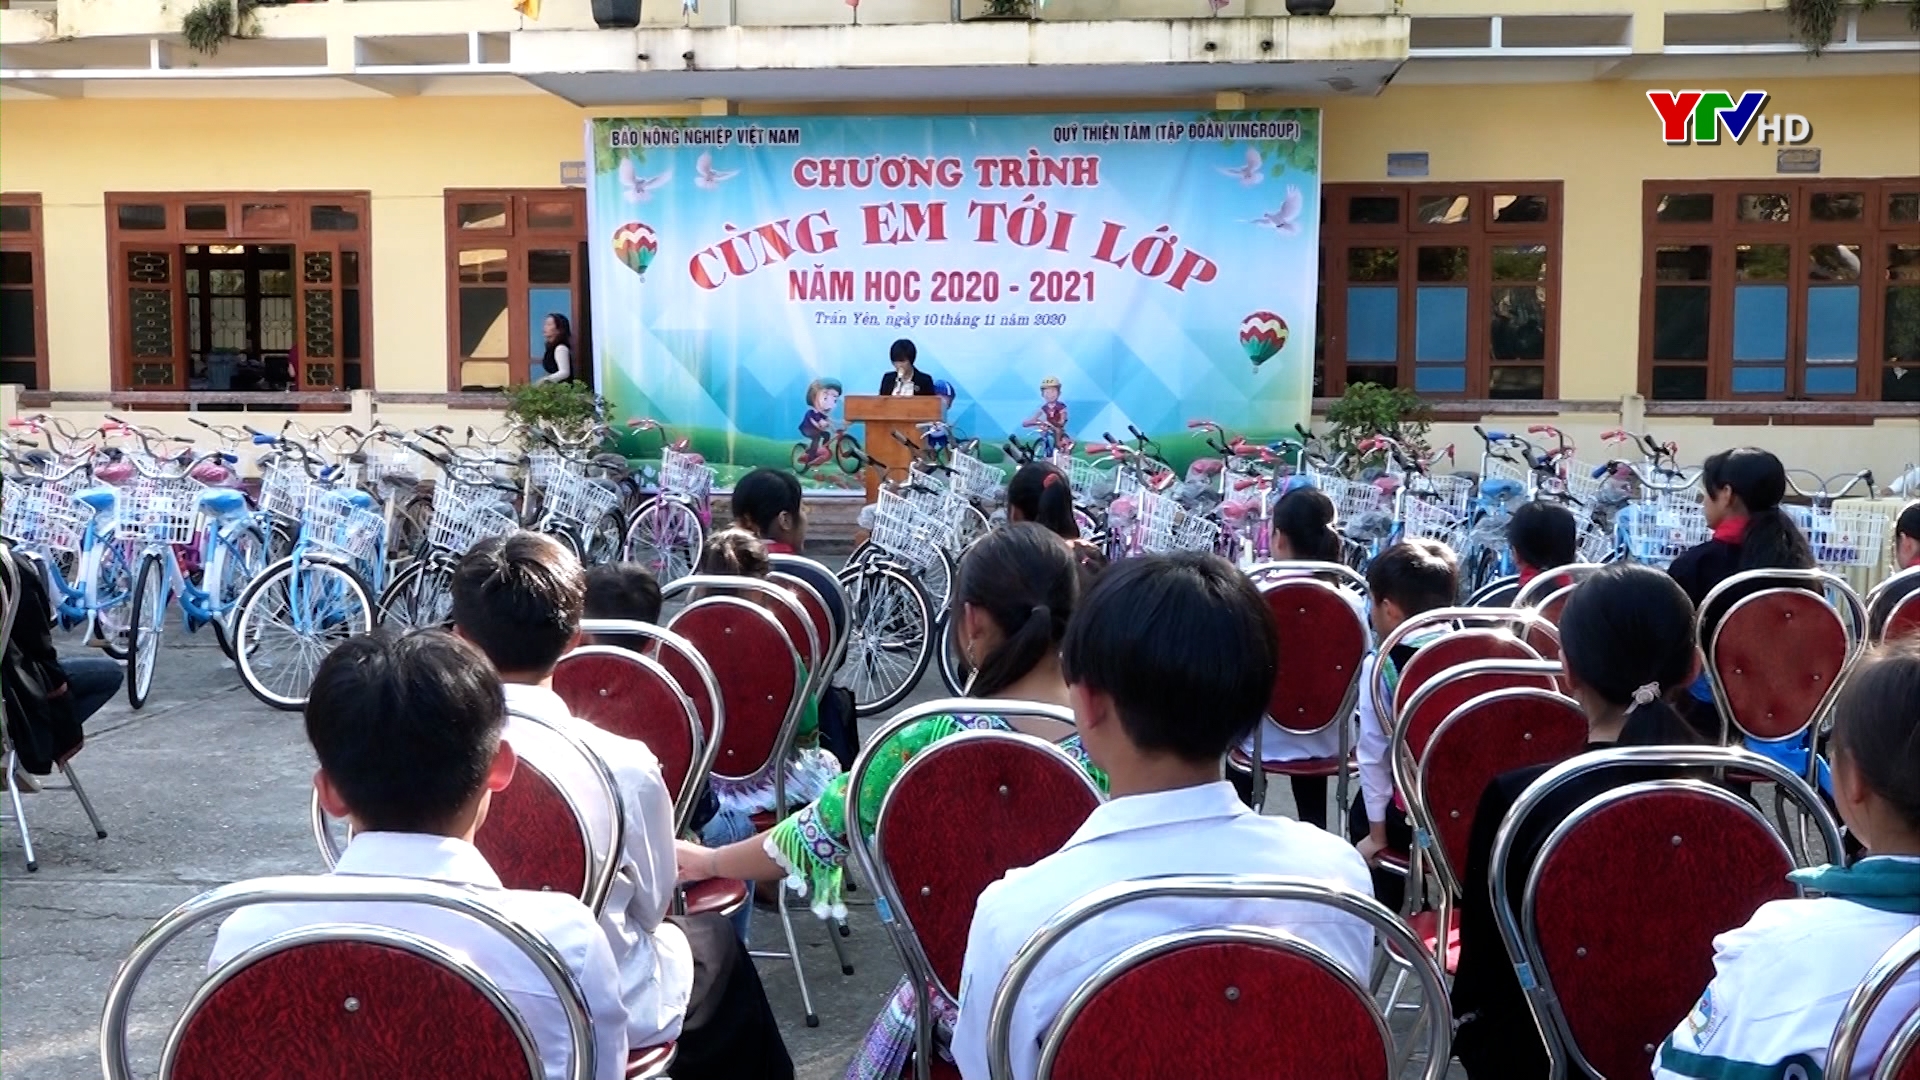 Chương trình "Cùng em tới lớp" năm học 2020 - 2021 tại huyện Trấn Yên.